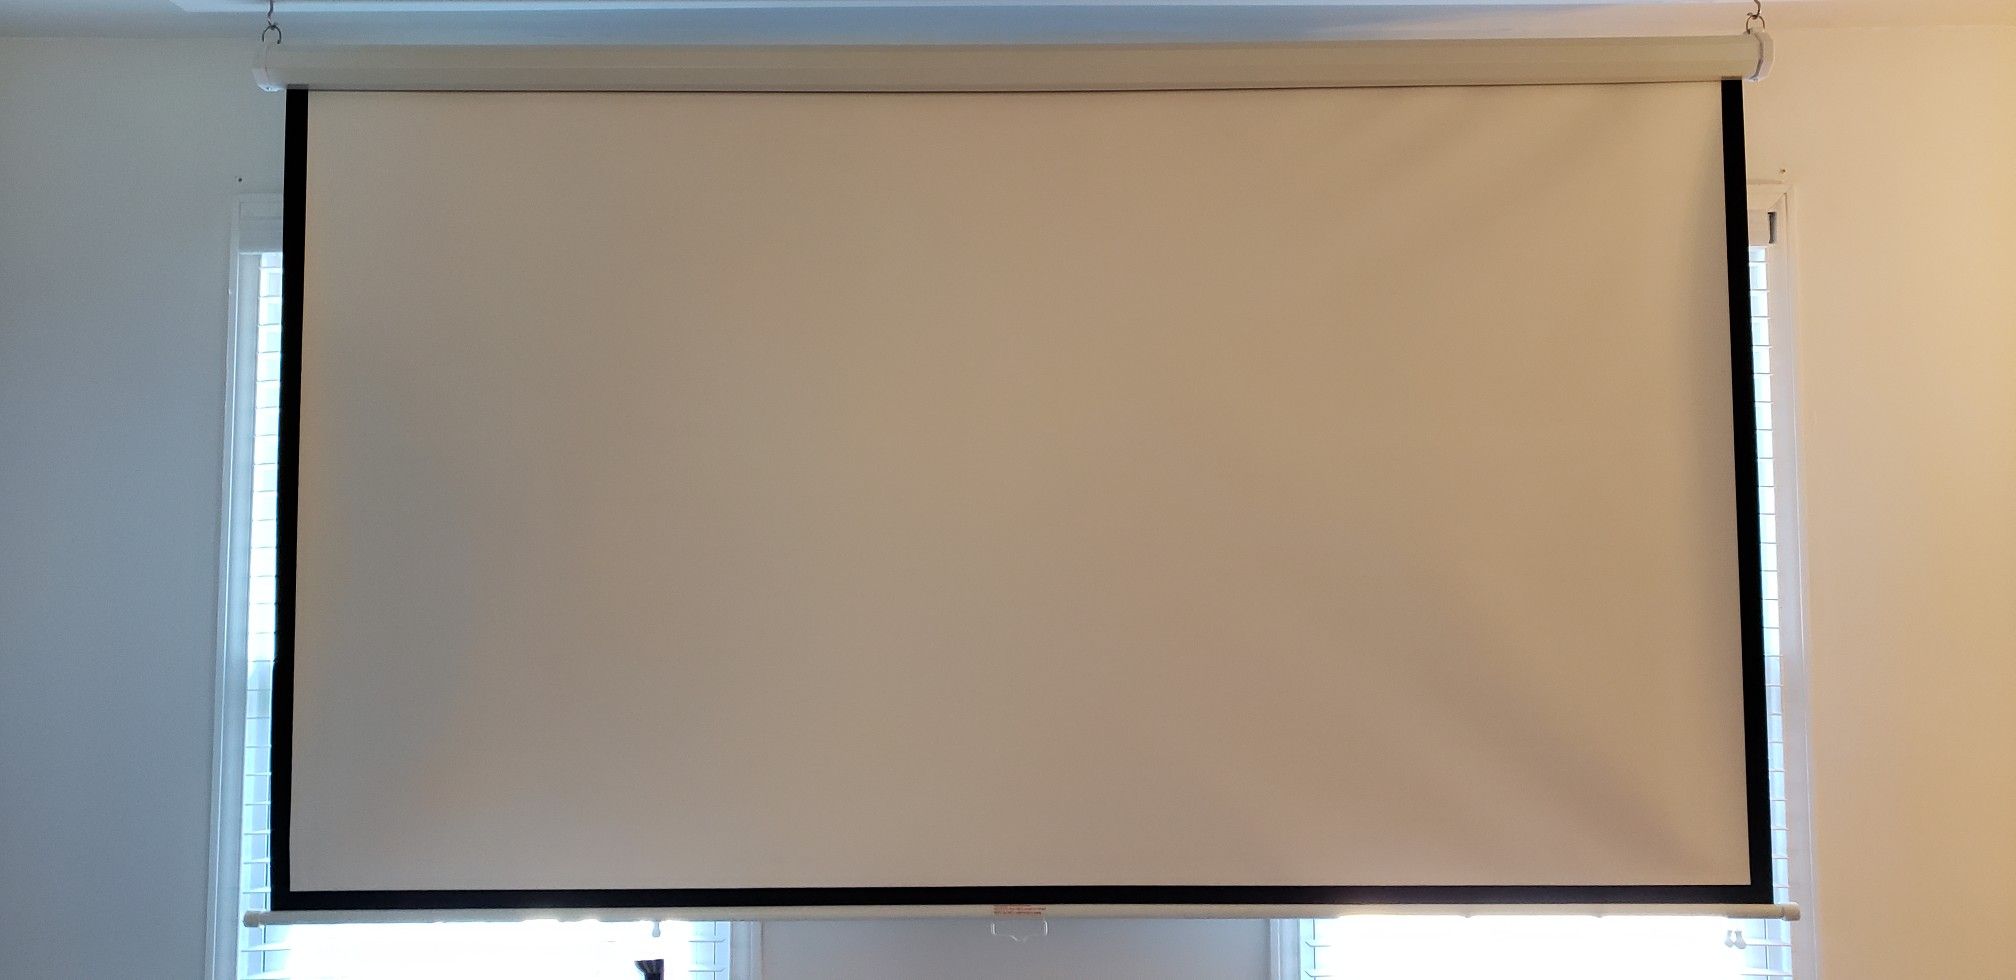 Vivo 100 inch projector screen